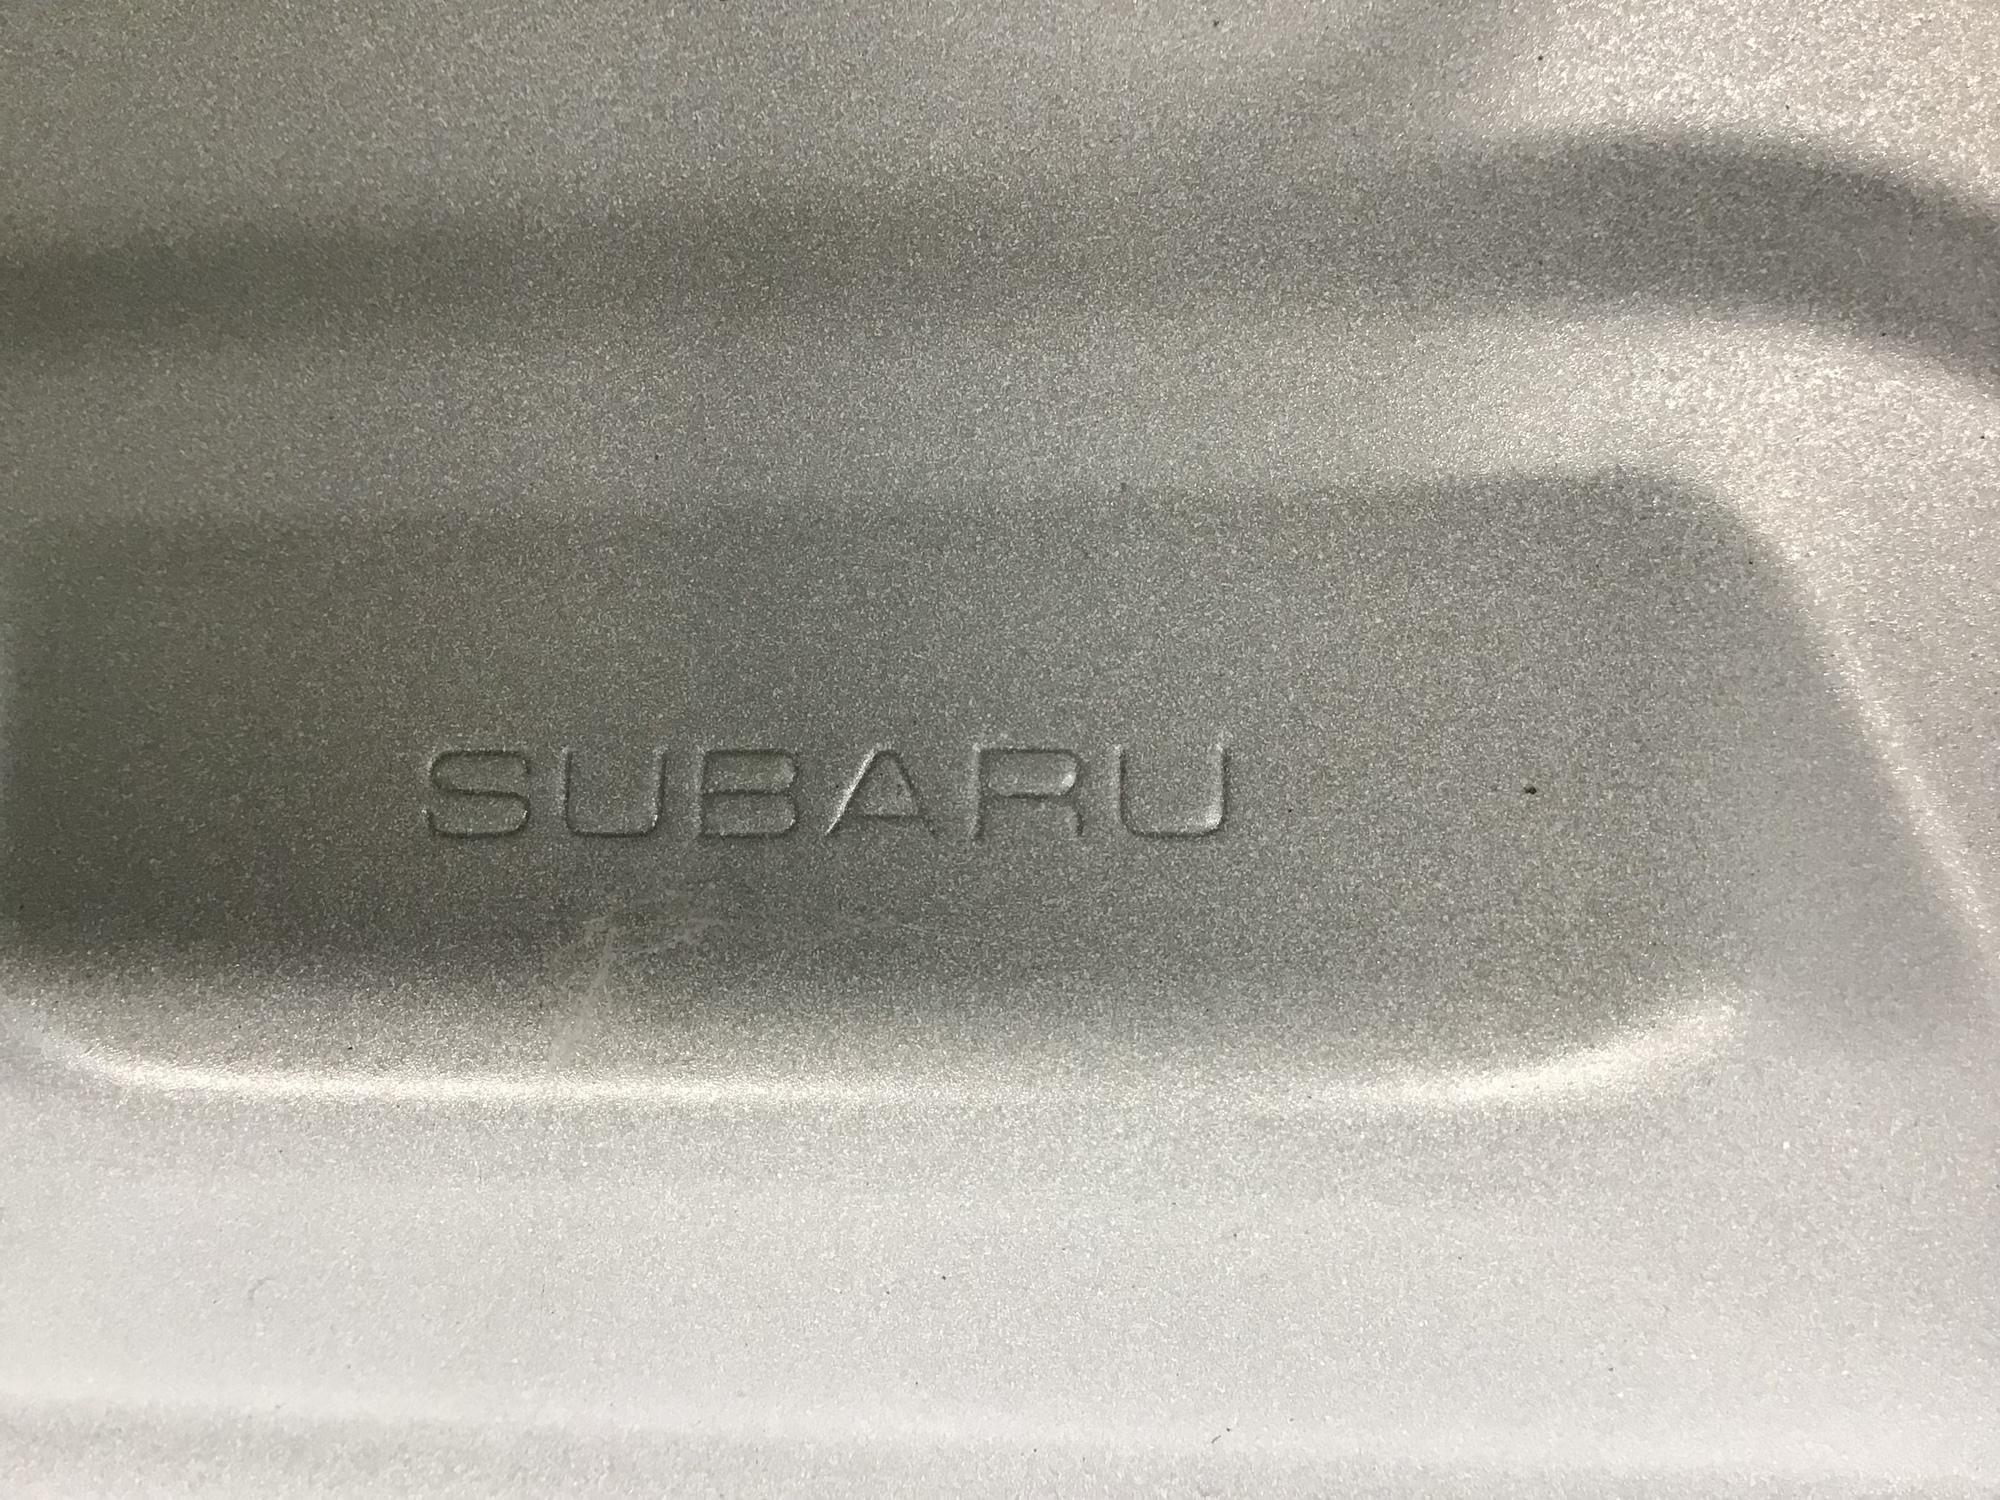 Крышка багажника, Subaru Legacy (B14) 2010-2015